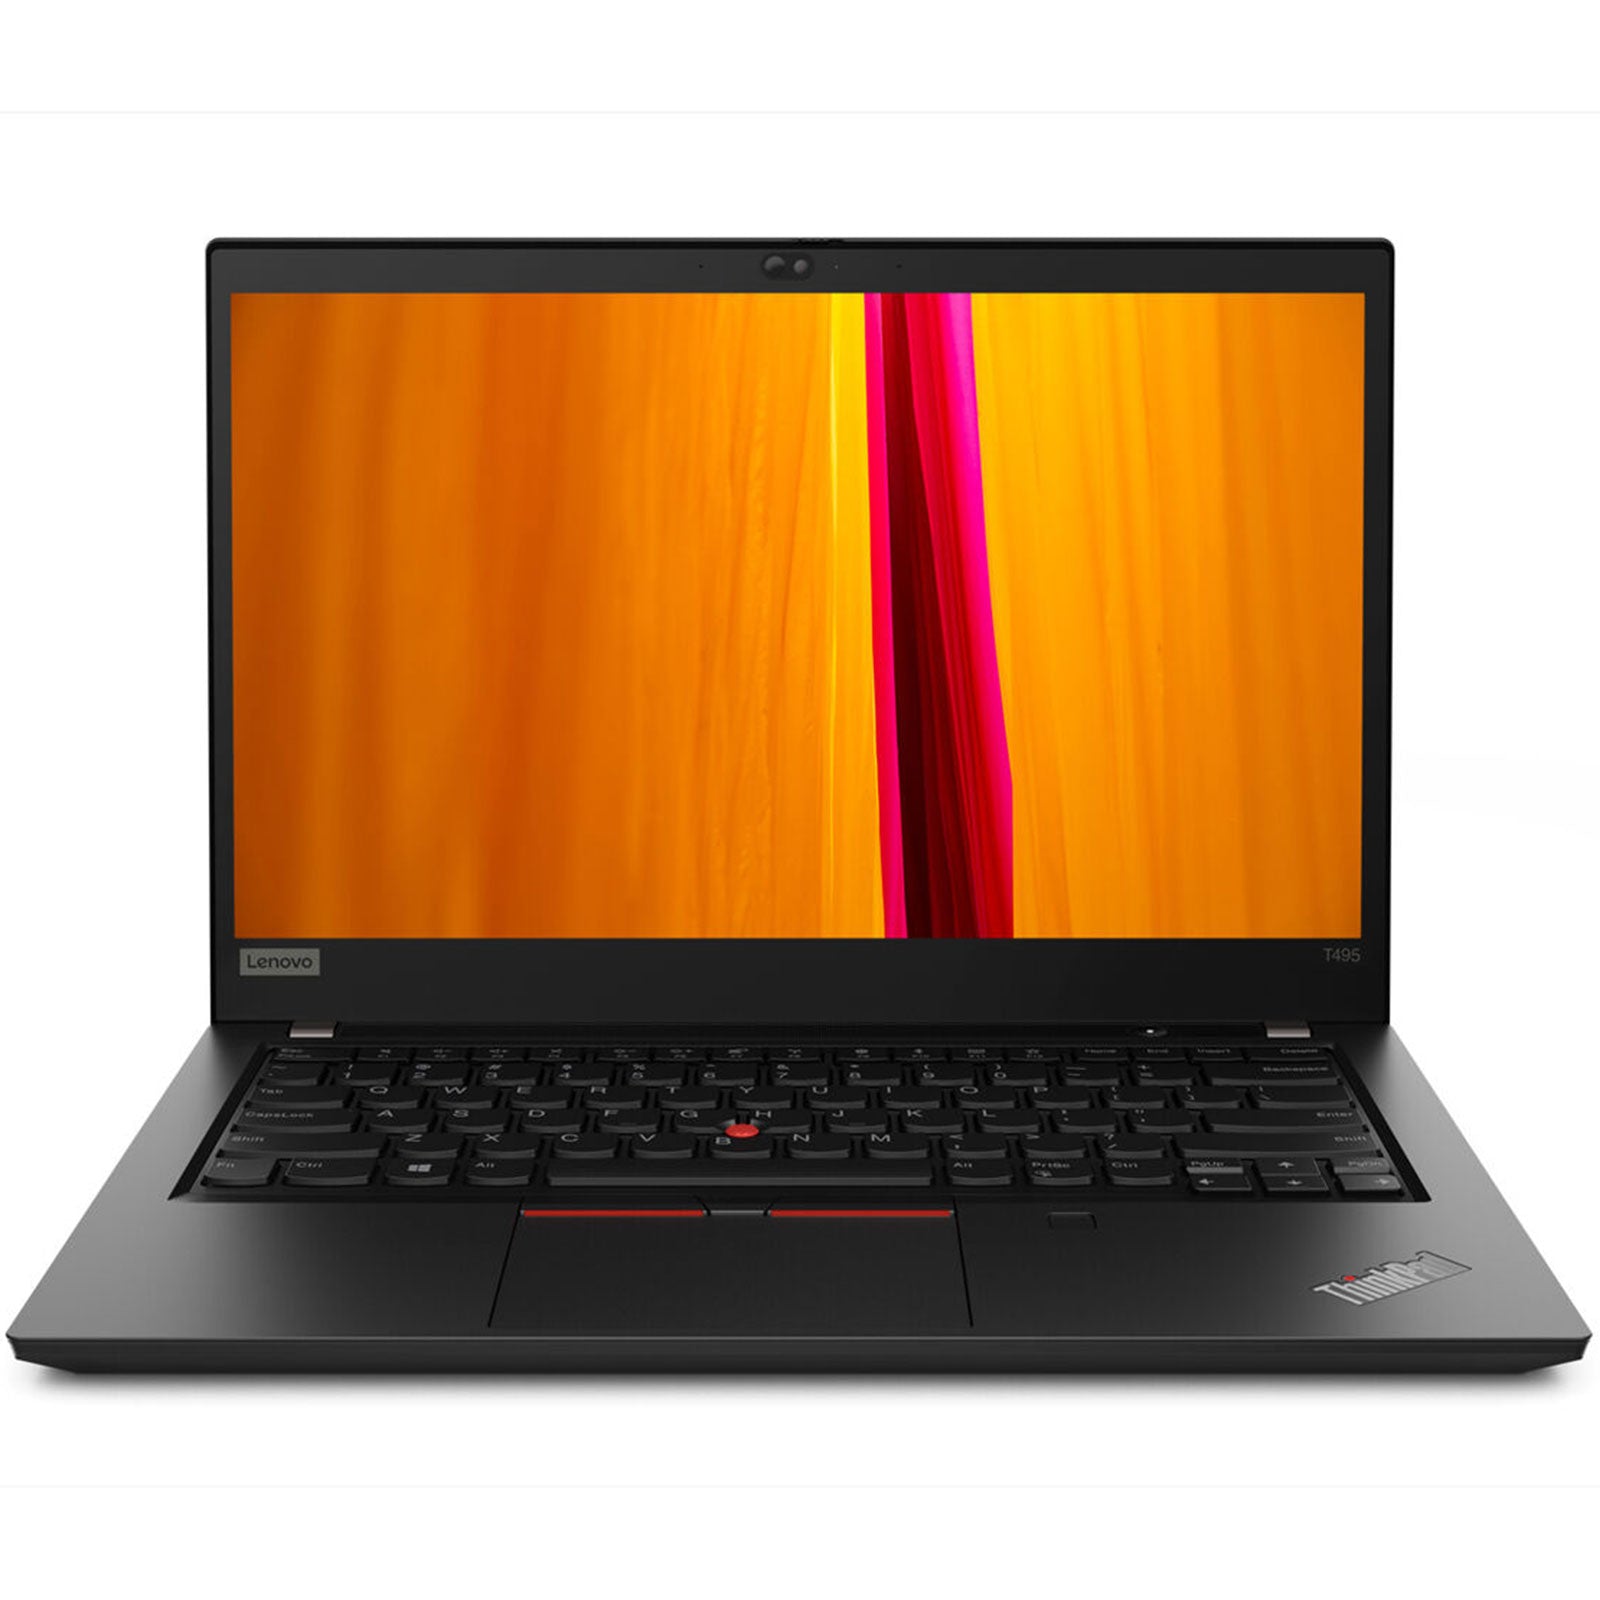 Notebook ricondizionato - Grado A - Lenovo ThinkPad T495 Notebook 14" AMD Ryzen 5 3500U Ram 16GB SSD 512GB Webcam (Ricondizionato Grado A) - Disponibile in 2-4 giorni lavorativi